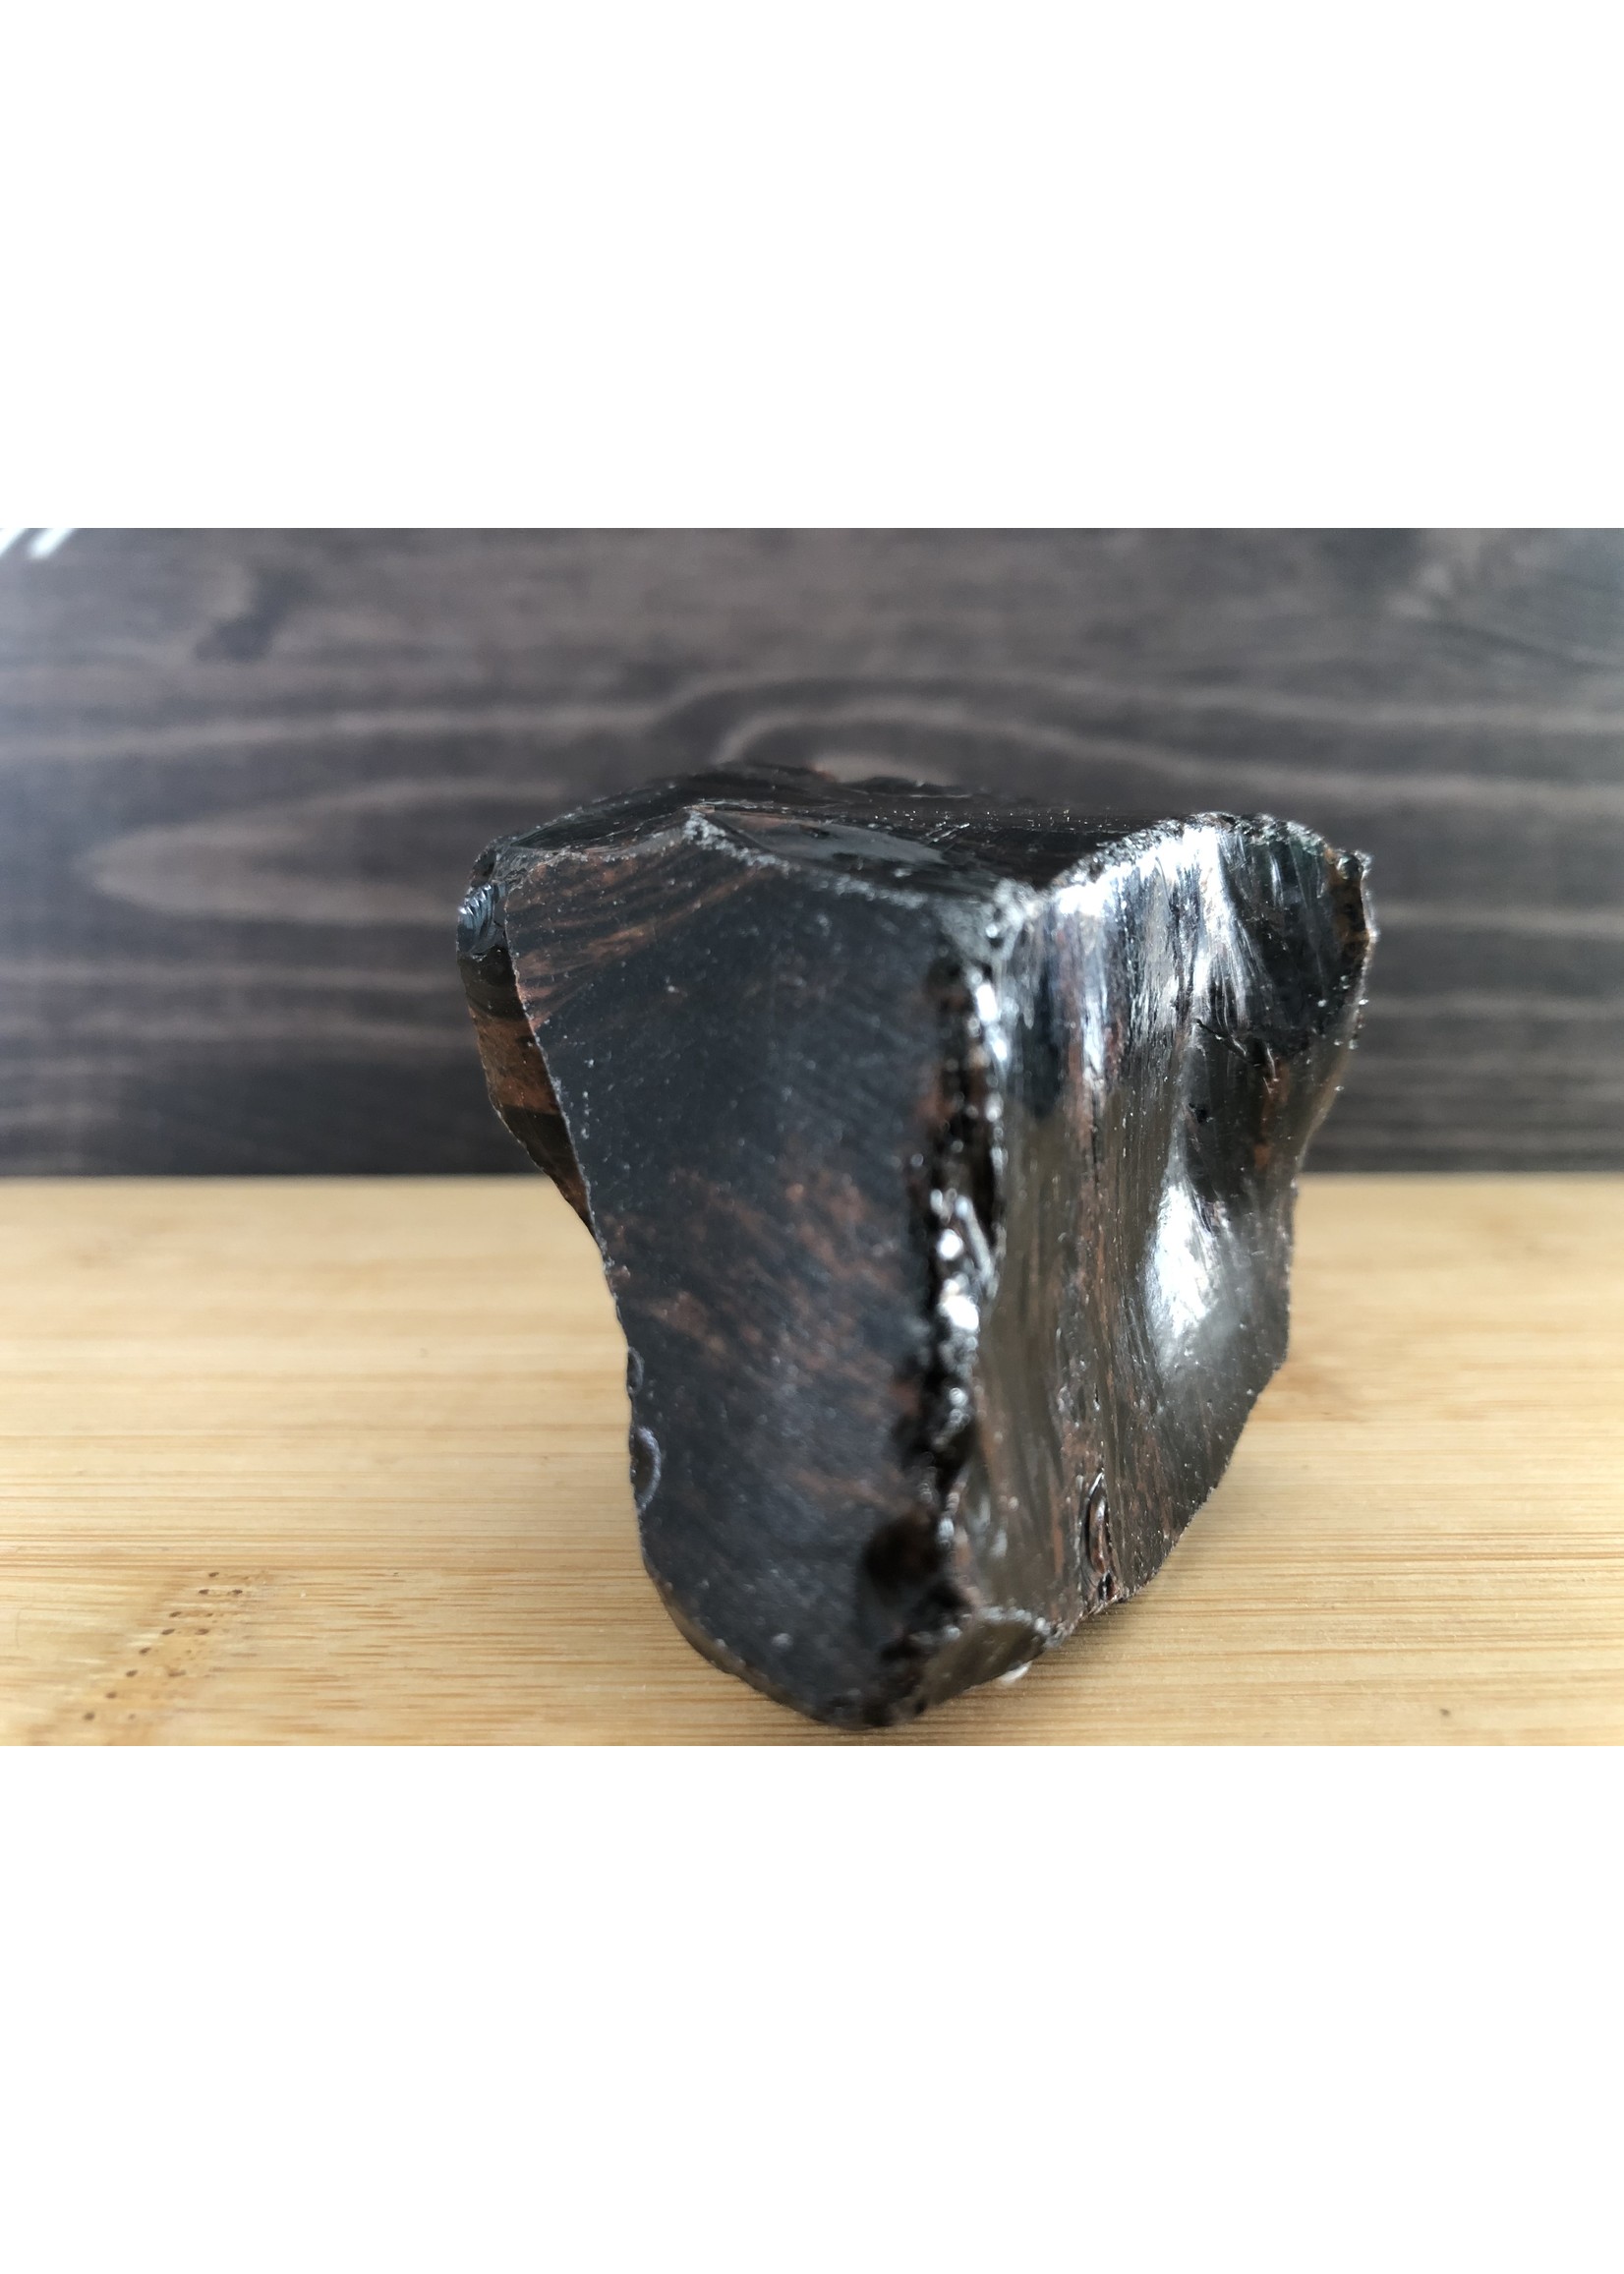 magnifique obsidienne mahogany polie, obsidienne acajou, utilisée pour soulager divers types de douleurs comme courbatures ou crampes musculaires